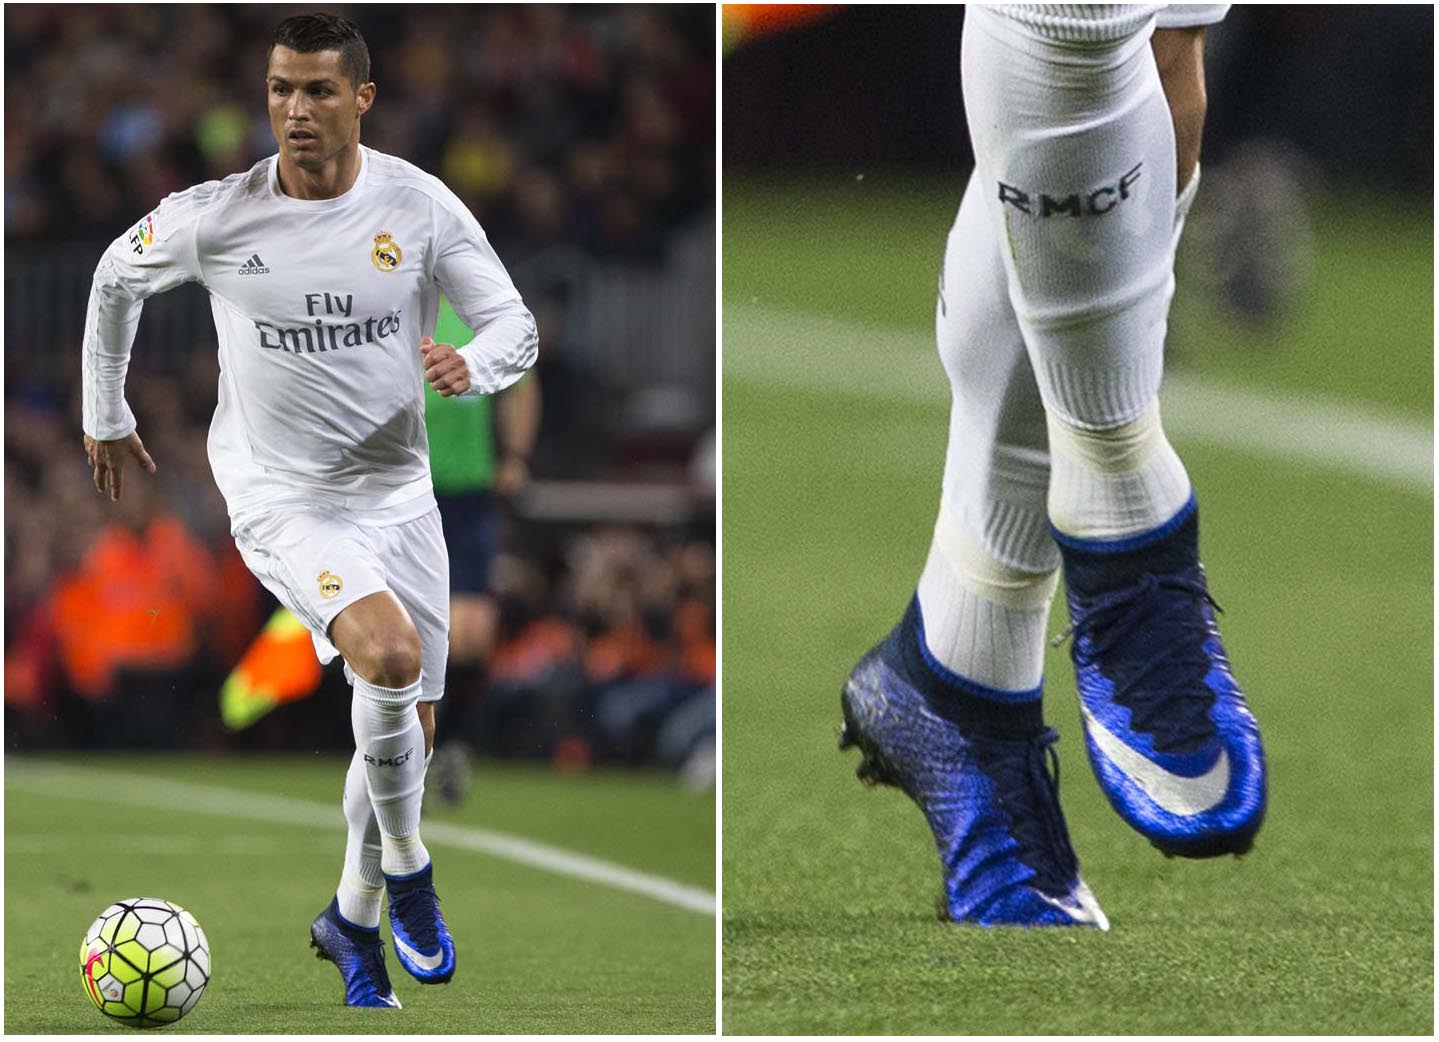 Ronaldo mang lên chân giày bóng đá Nike Mercurial Superfly IV Natural Diamond đẹp mắt